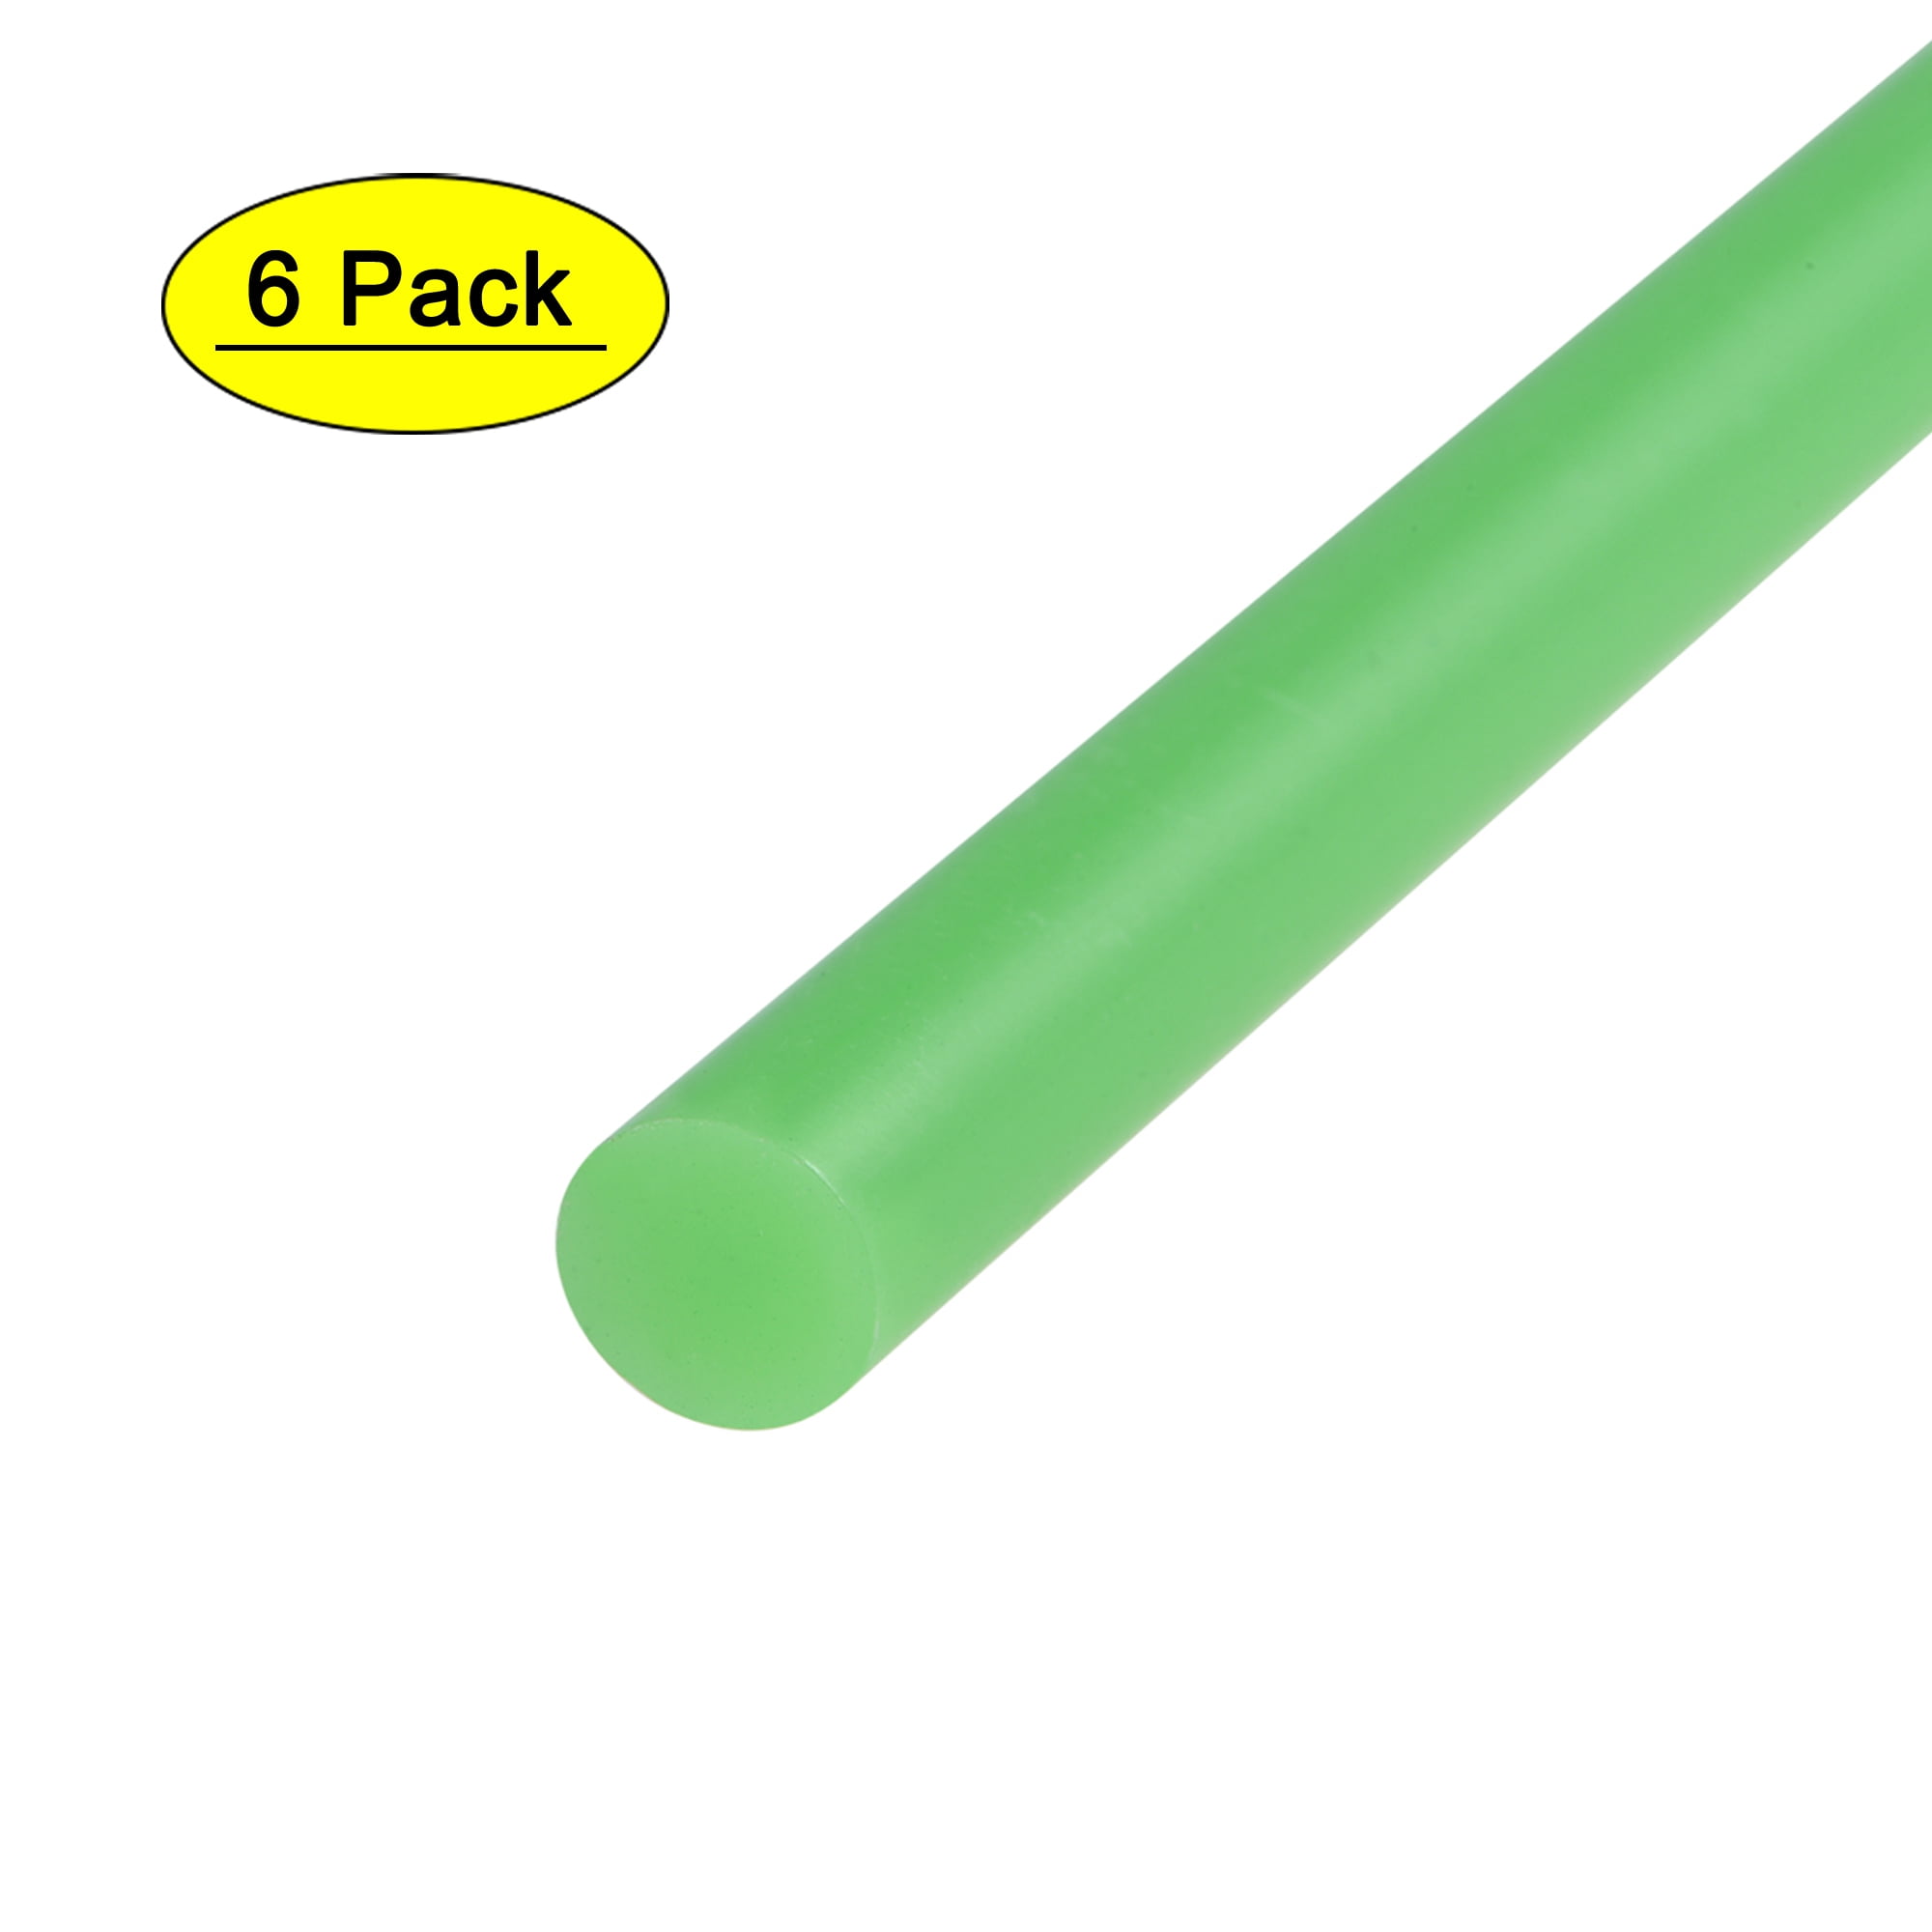 Bright Green Hot Glue Sticks Mini Size - 4 inch - 12 Pack